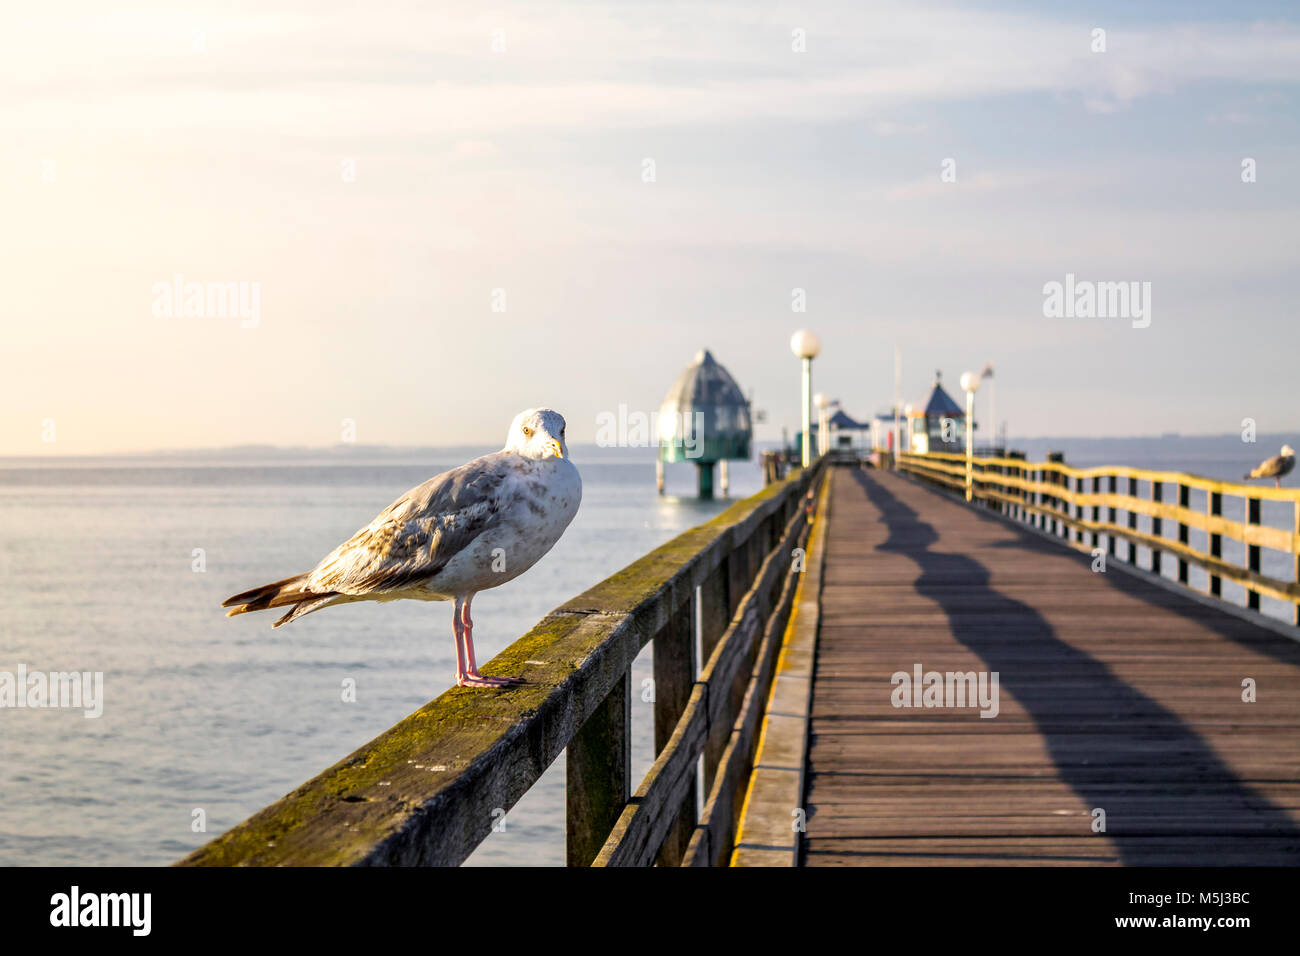 Germania, Groemitz, Seagull sulla ringhiera del ponte del mare Foto Stock